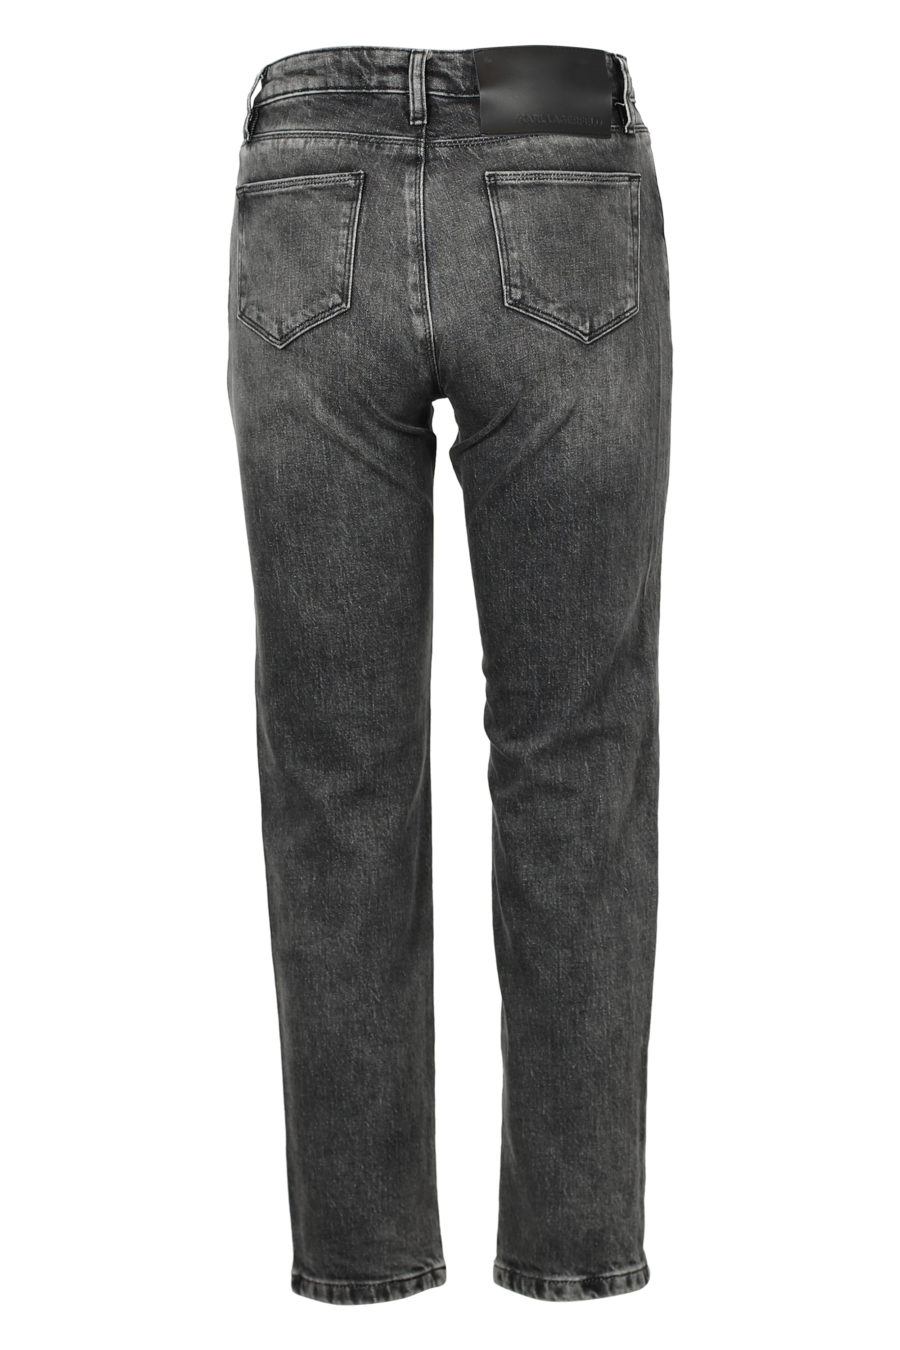 Pantalón tejano gris con logo abalorios - IMG 3160